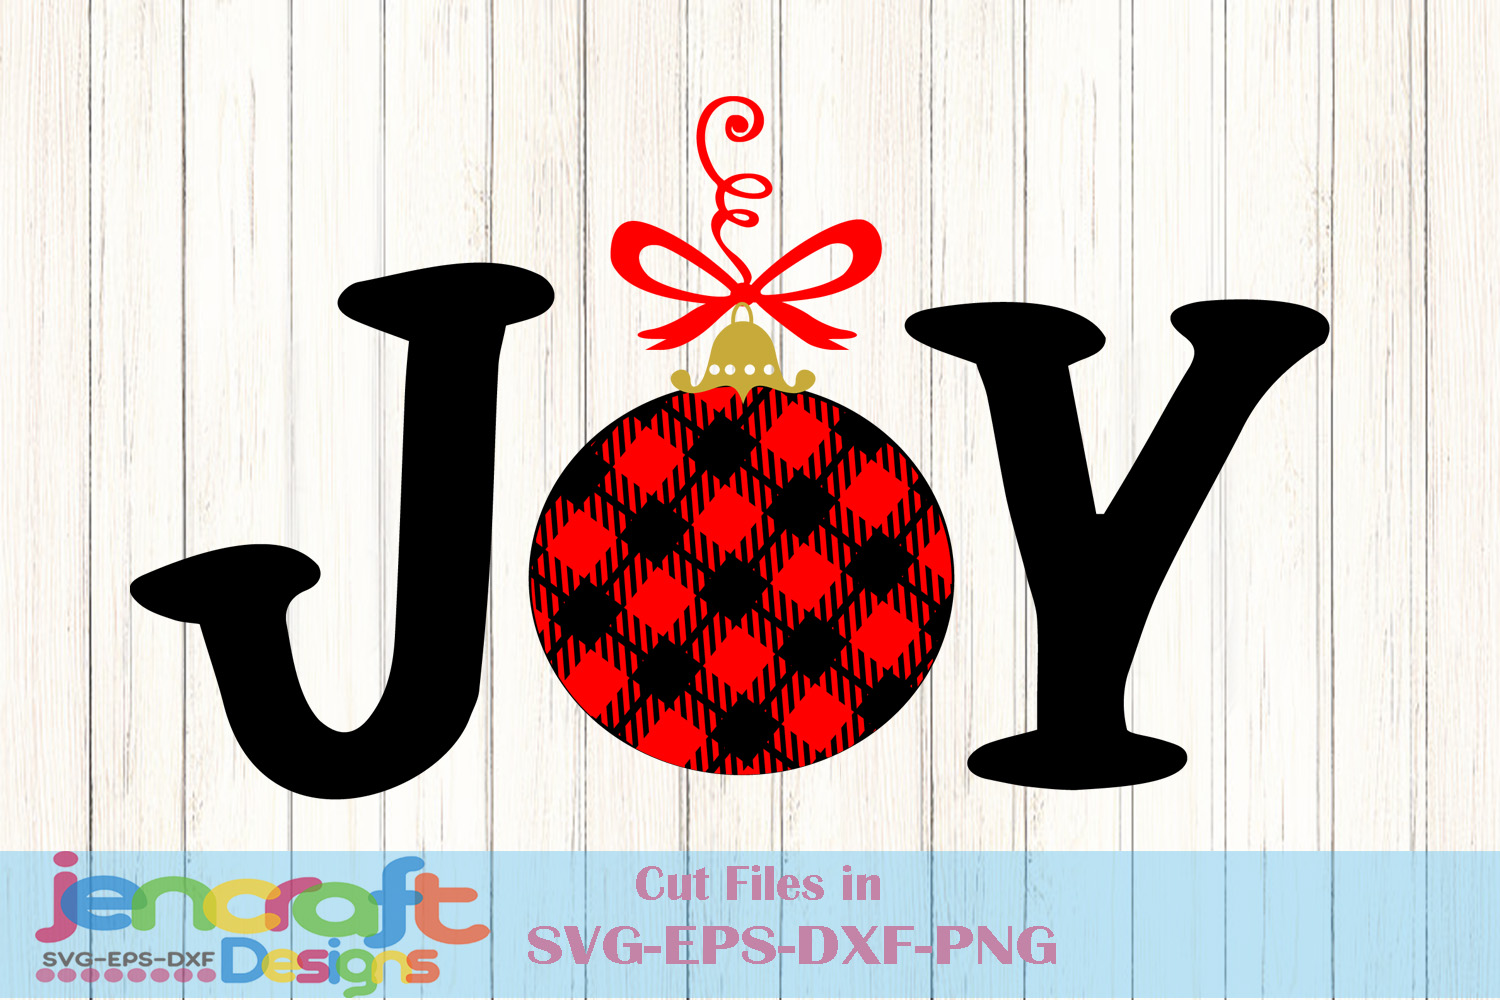 SVG images for Cricut Joy